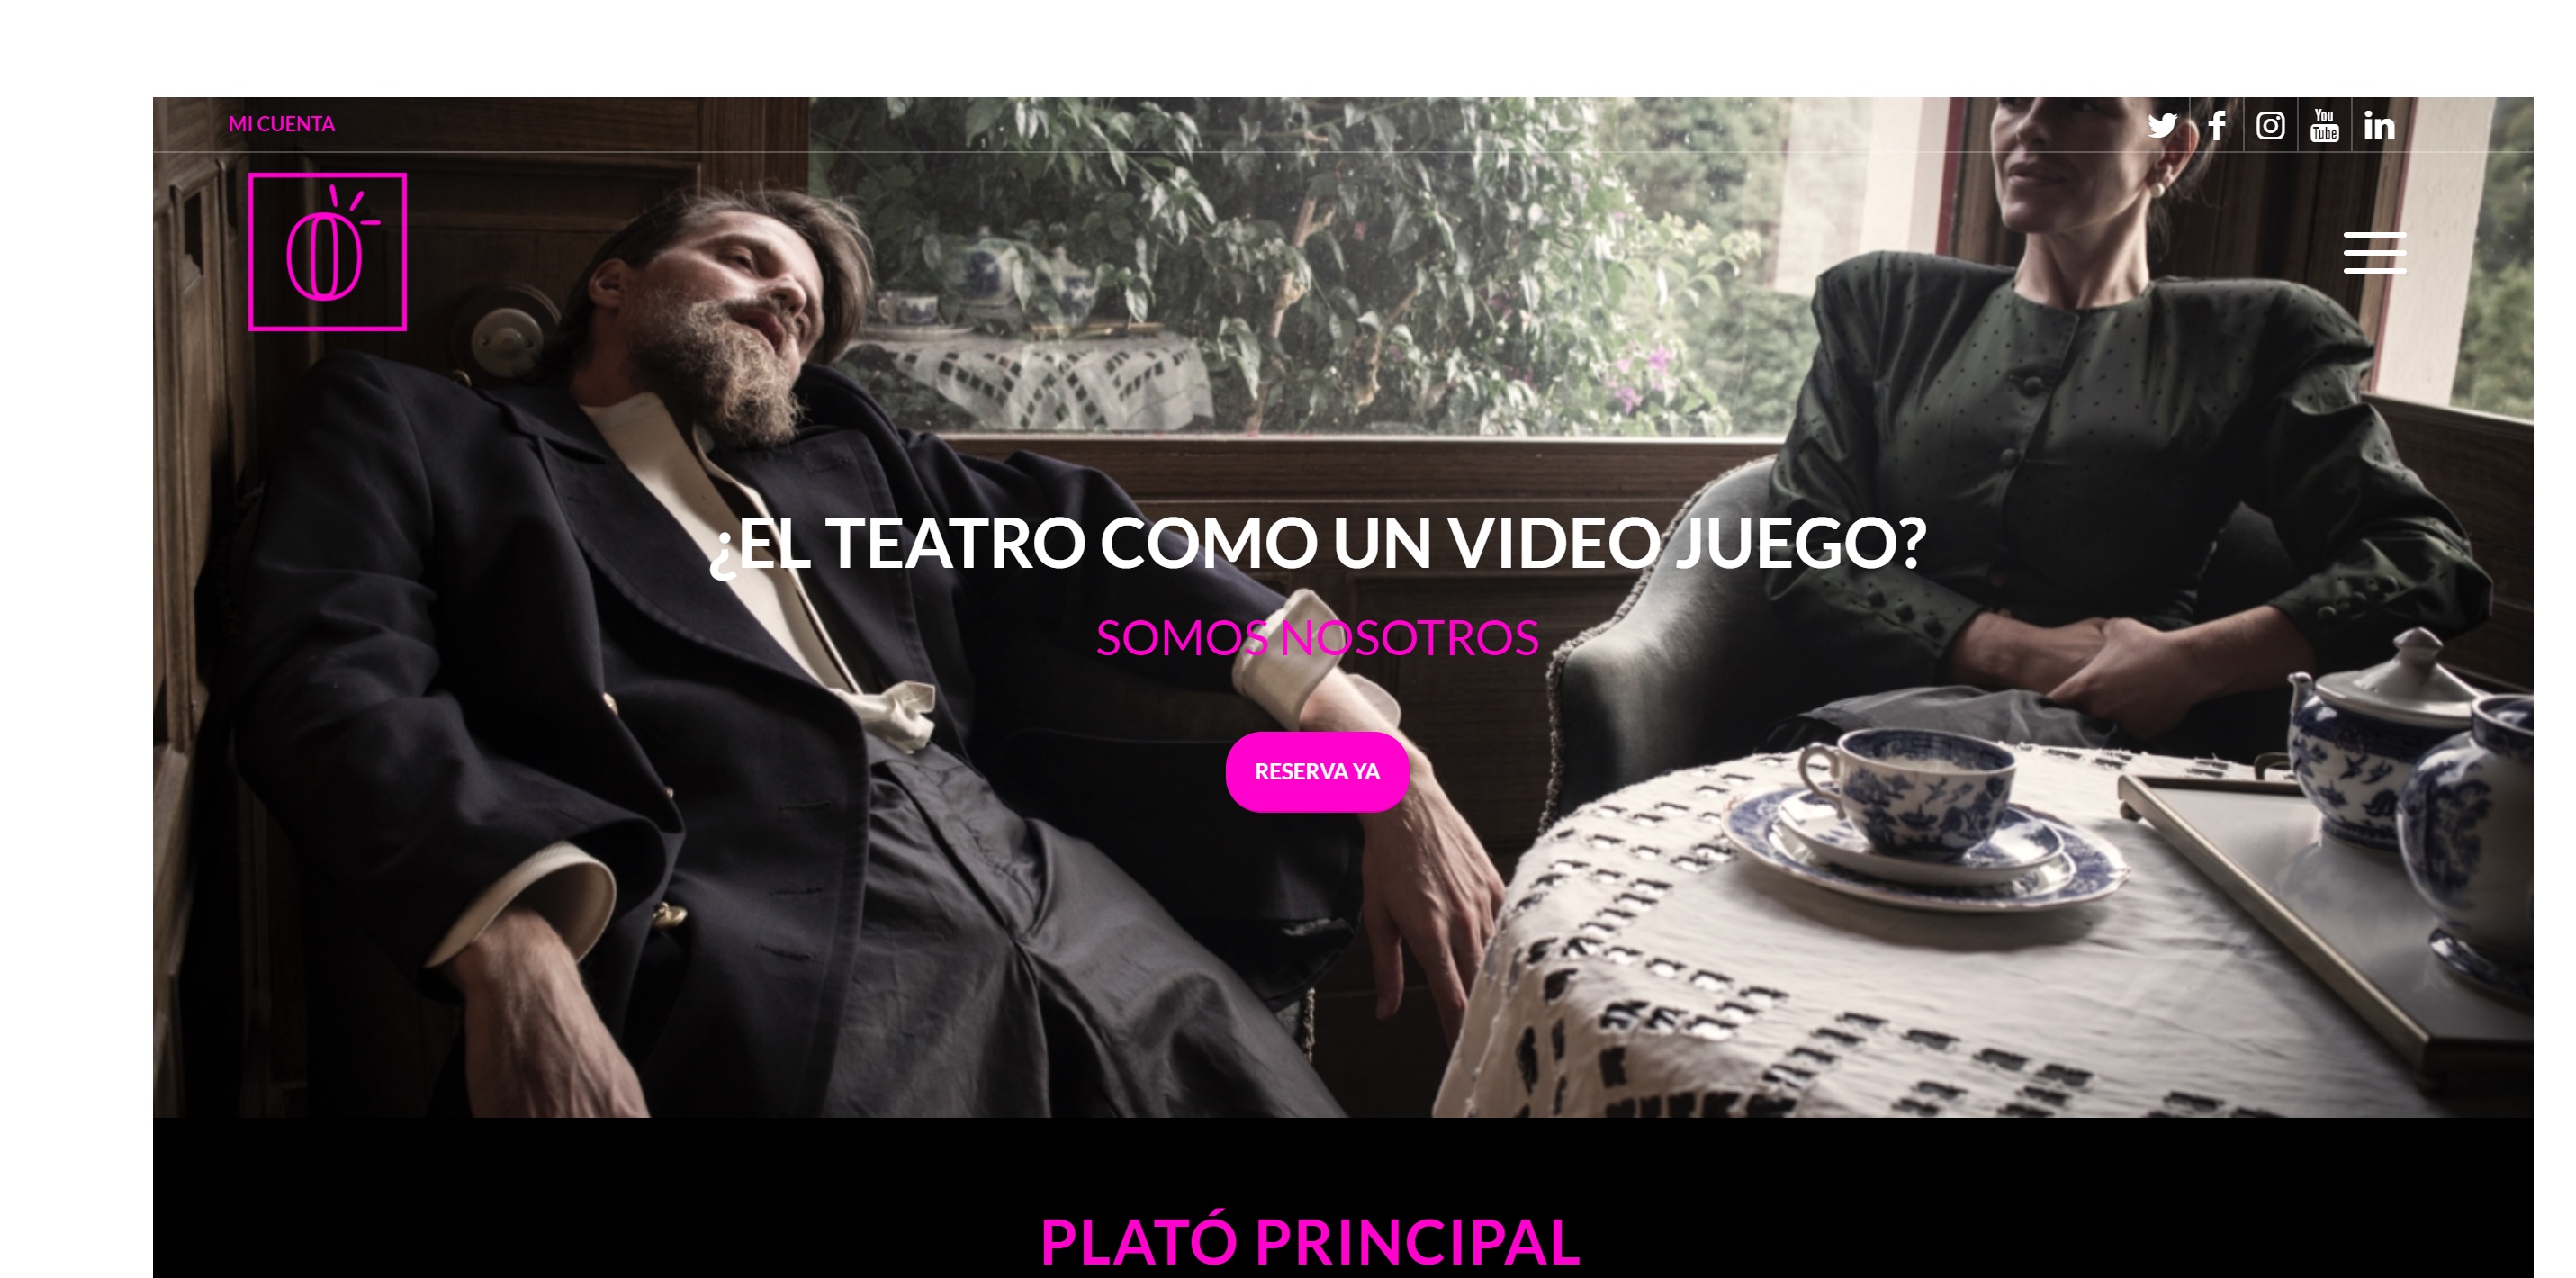 Plató Principal, plataforma ,española ,funcionalidades ,videojuego ,teatro en directo ,programapublicidad